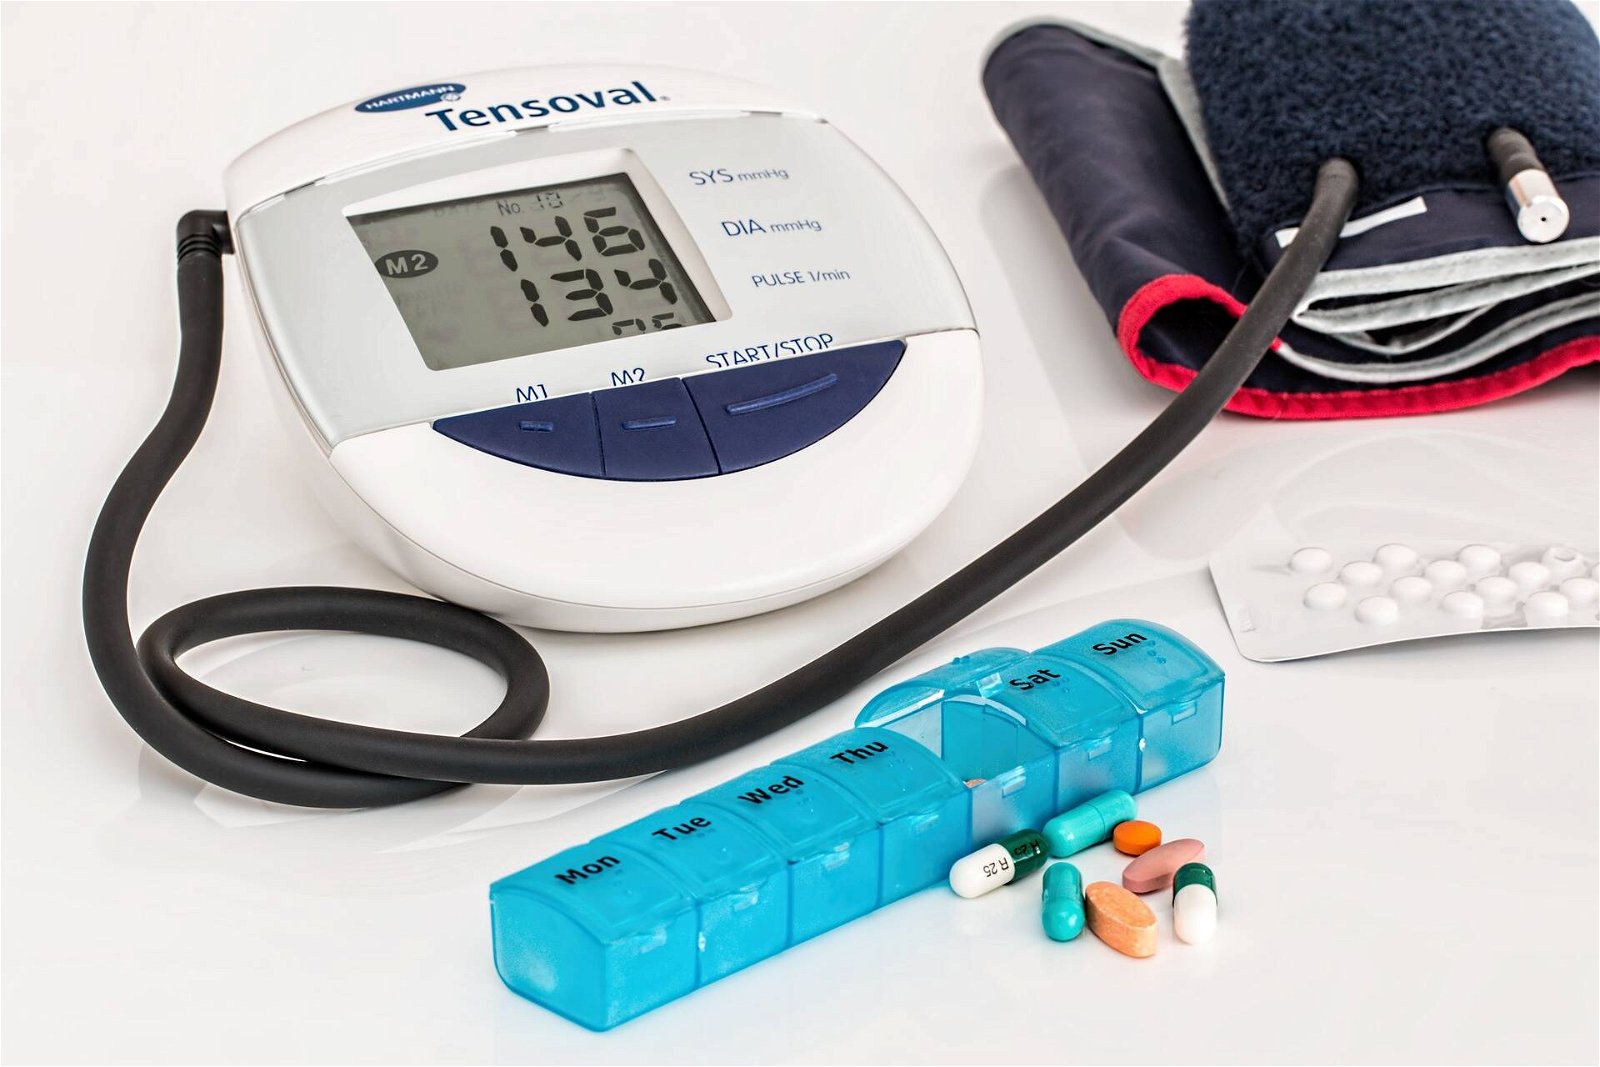 Immagine di Tante offerte Amazon su misuratori per la pressione, termometri e prodotti per la salute!